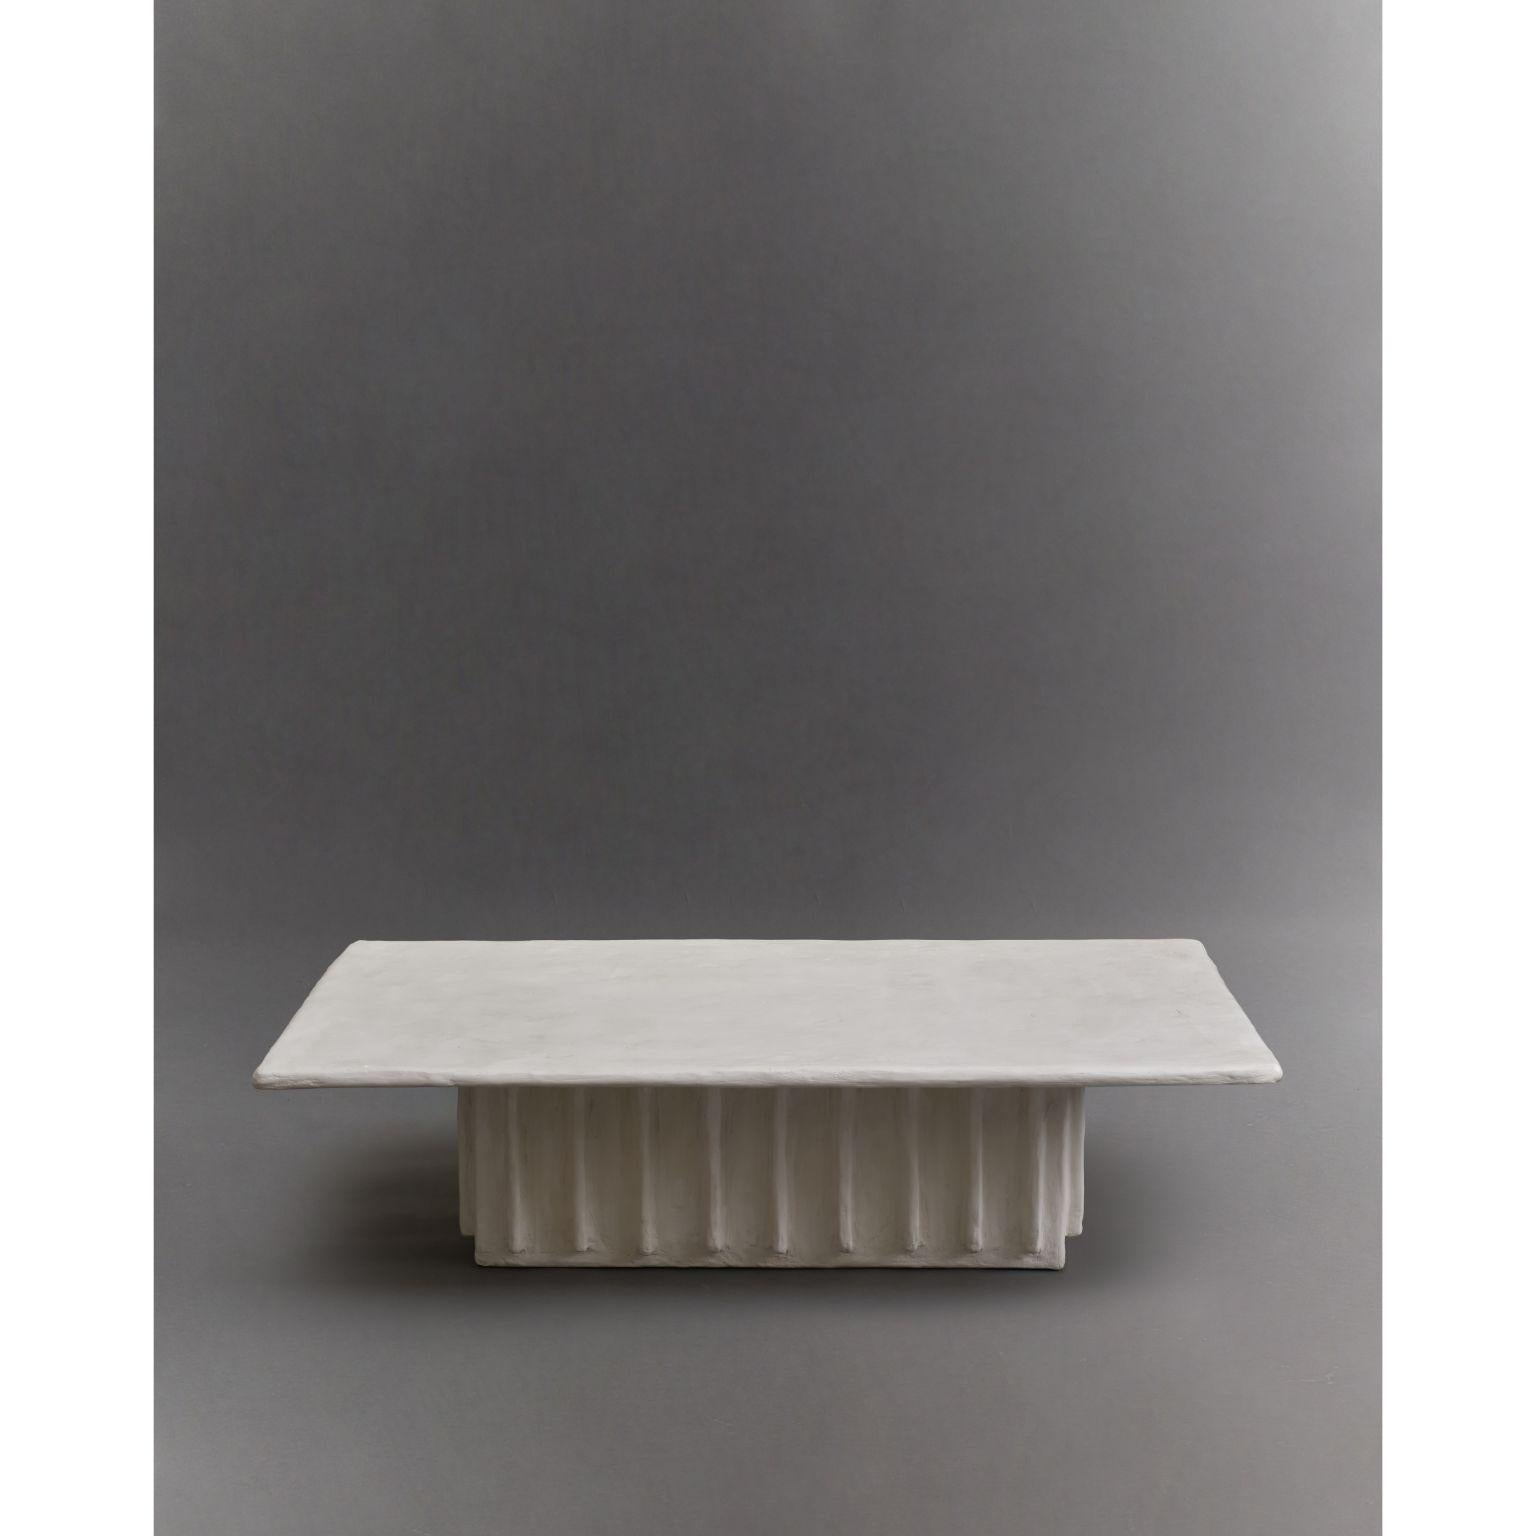 Table basse à colonnes par Ombia
Dimensions :  L 122 x P 71,5 x H 30,5 cm
MATERIAL : Finition en plâtre brut blanc. 
Couleurs personnalisées sur demande.


Ōmbia est un studio de sculpture et de design en céramique basé à Los Angeles. Le nom et ses